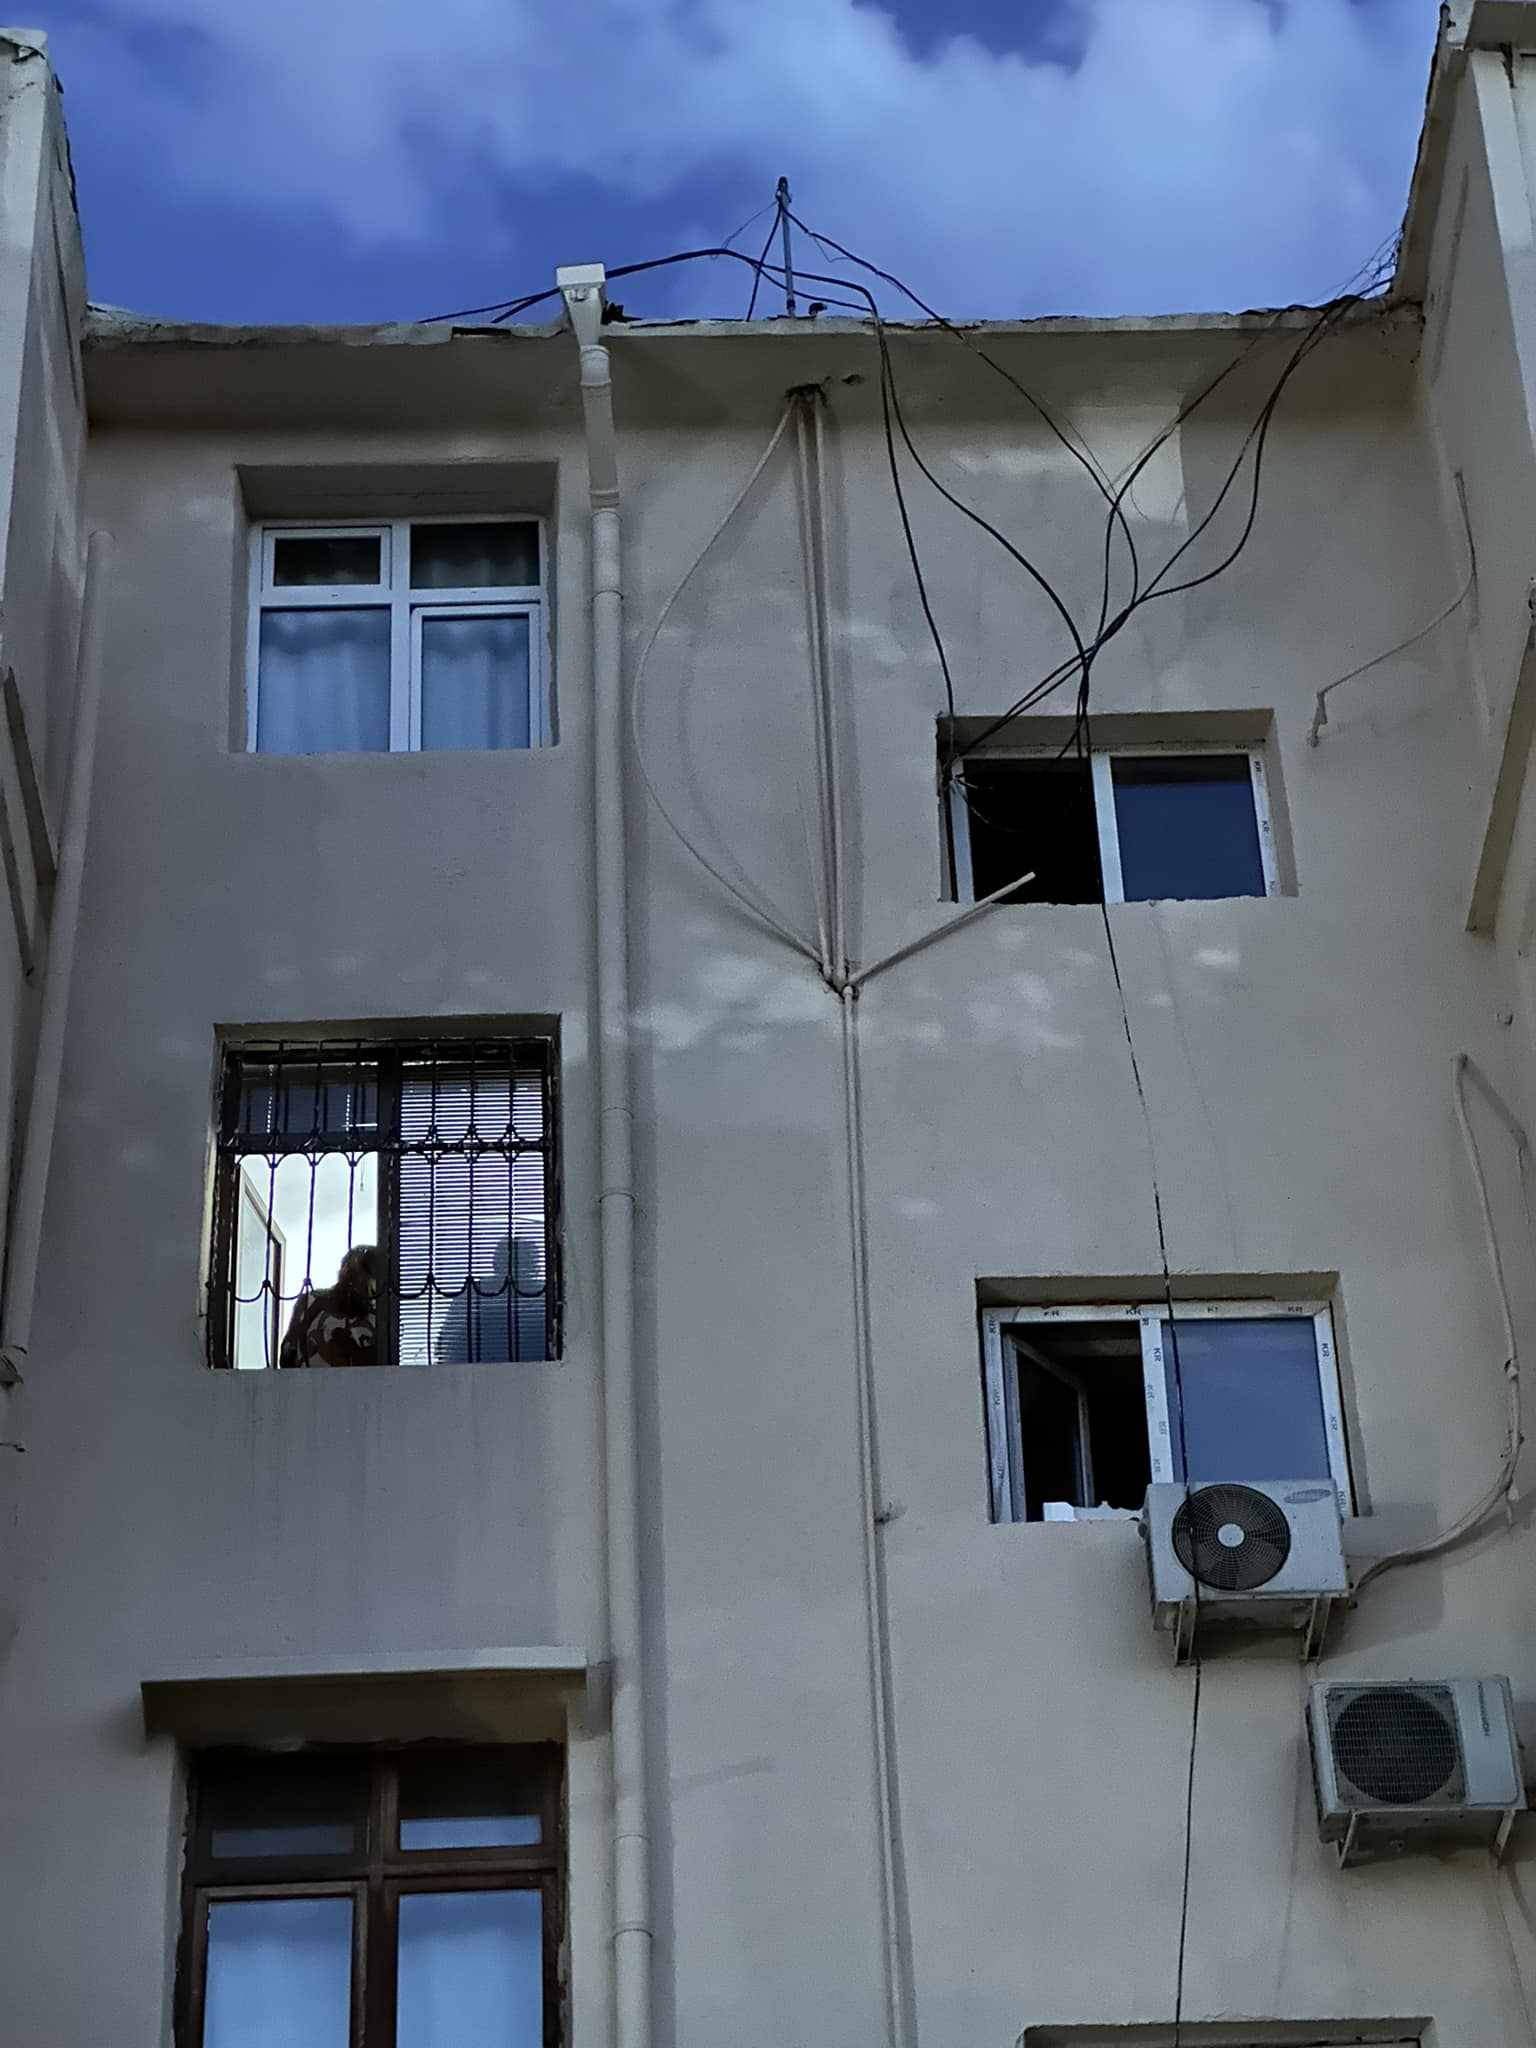 Окна офиса Ибадоглу, где проходил обыск. Фото Мейдан ТВ